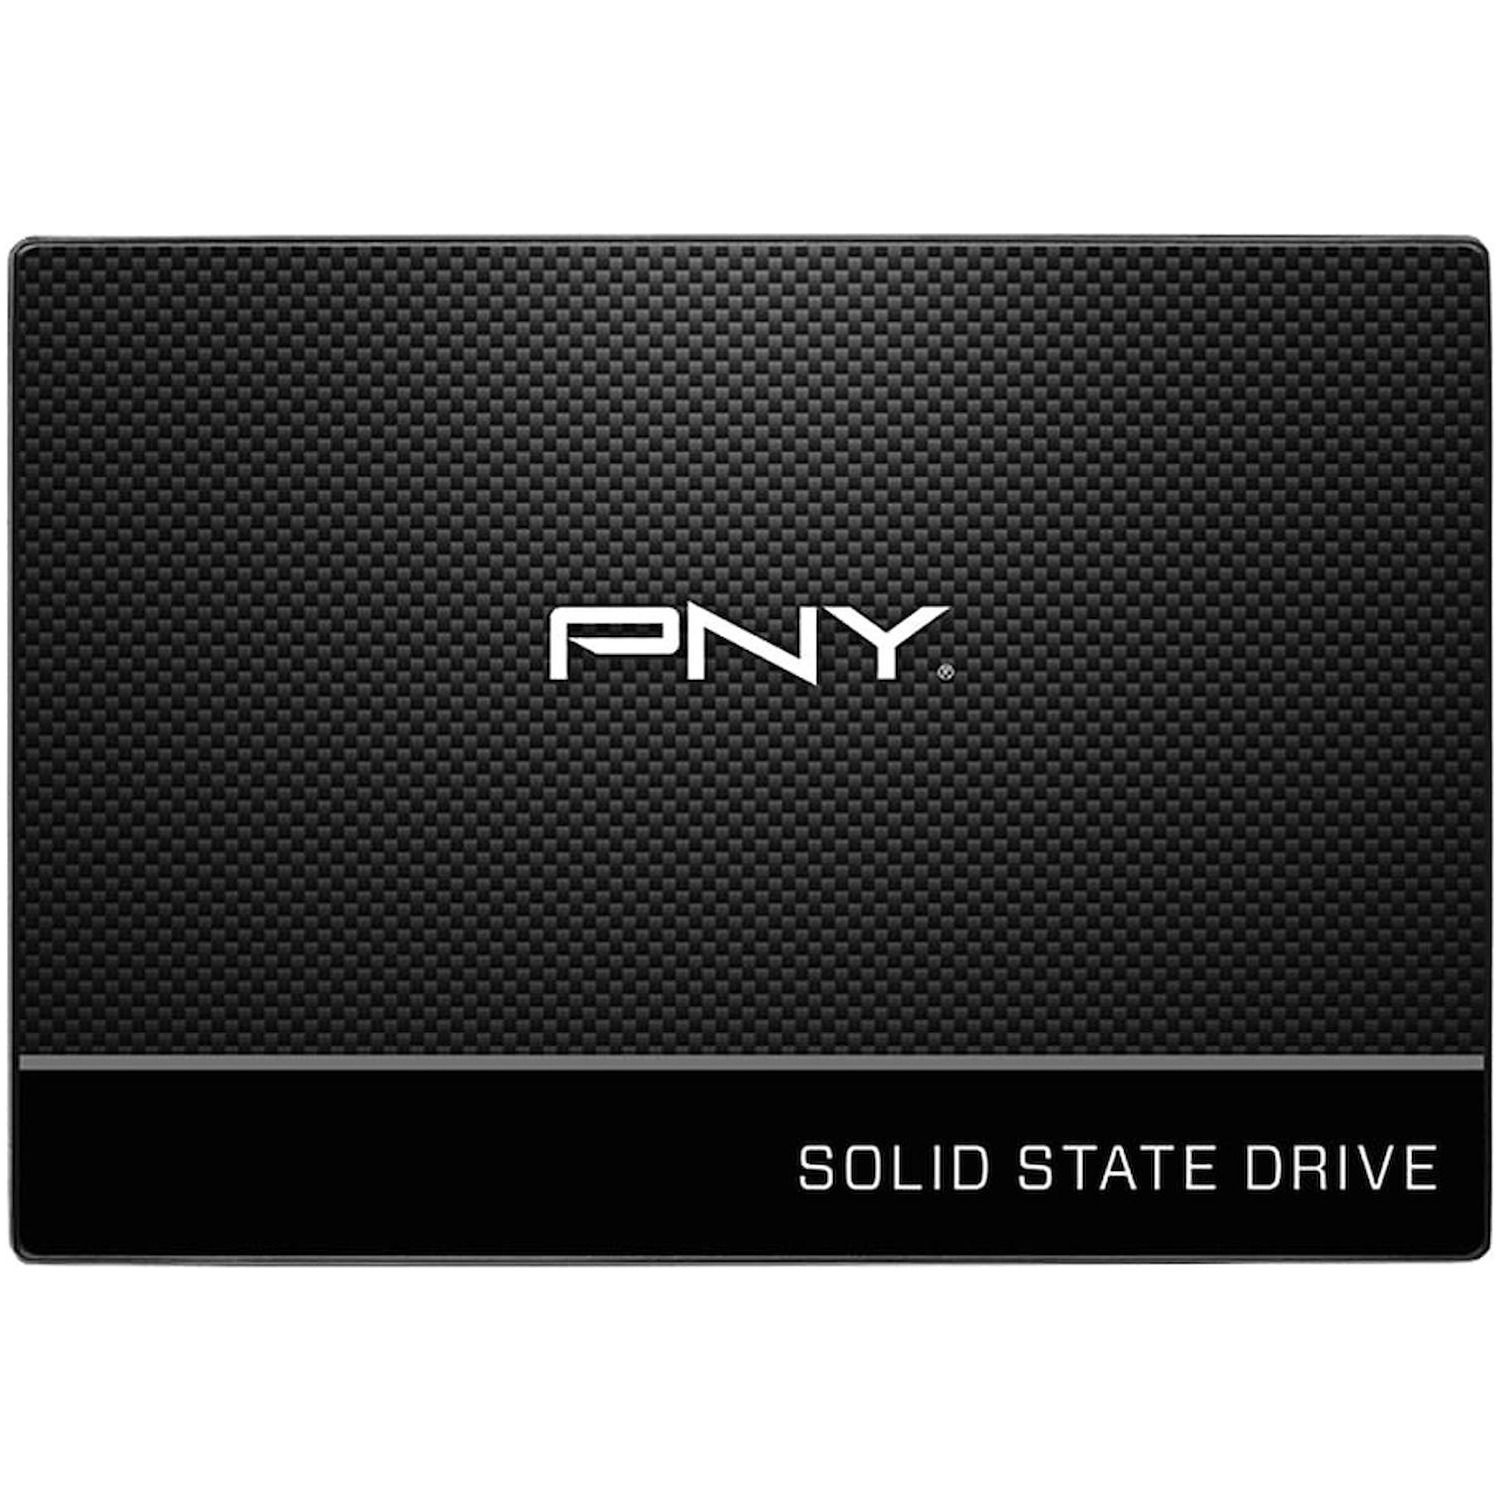 Immagine per HD SSD PNY 240GB 2,5" SATA3 da DIMOStore